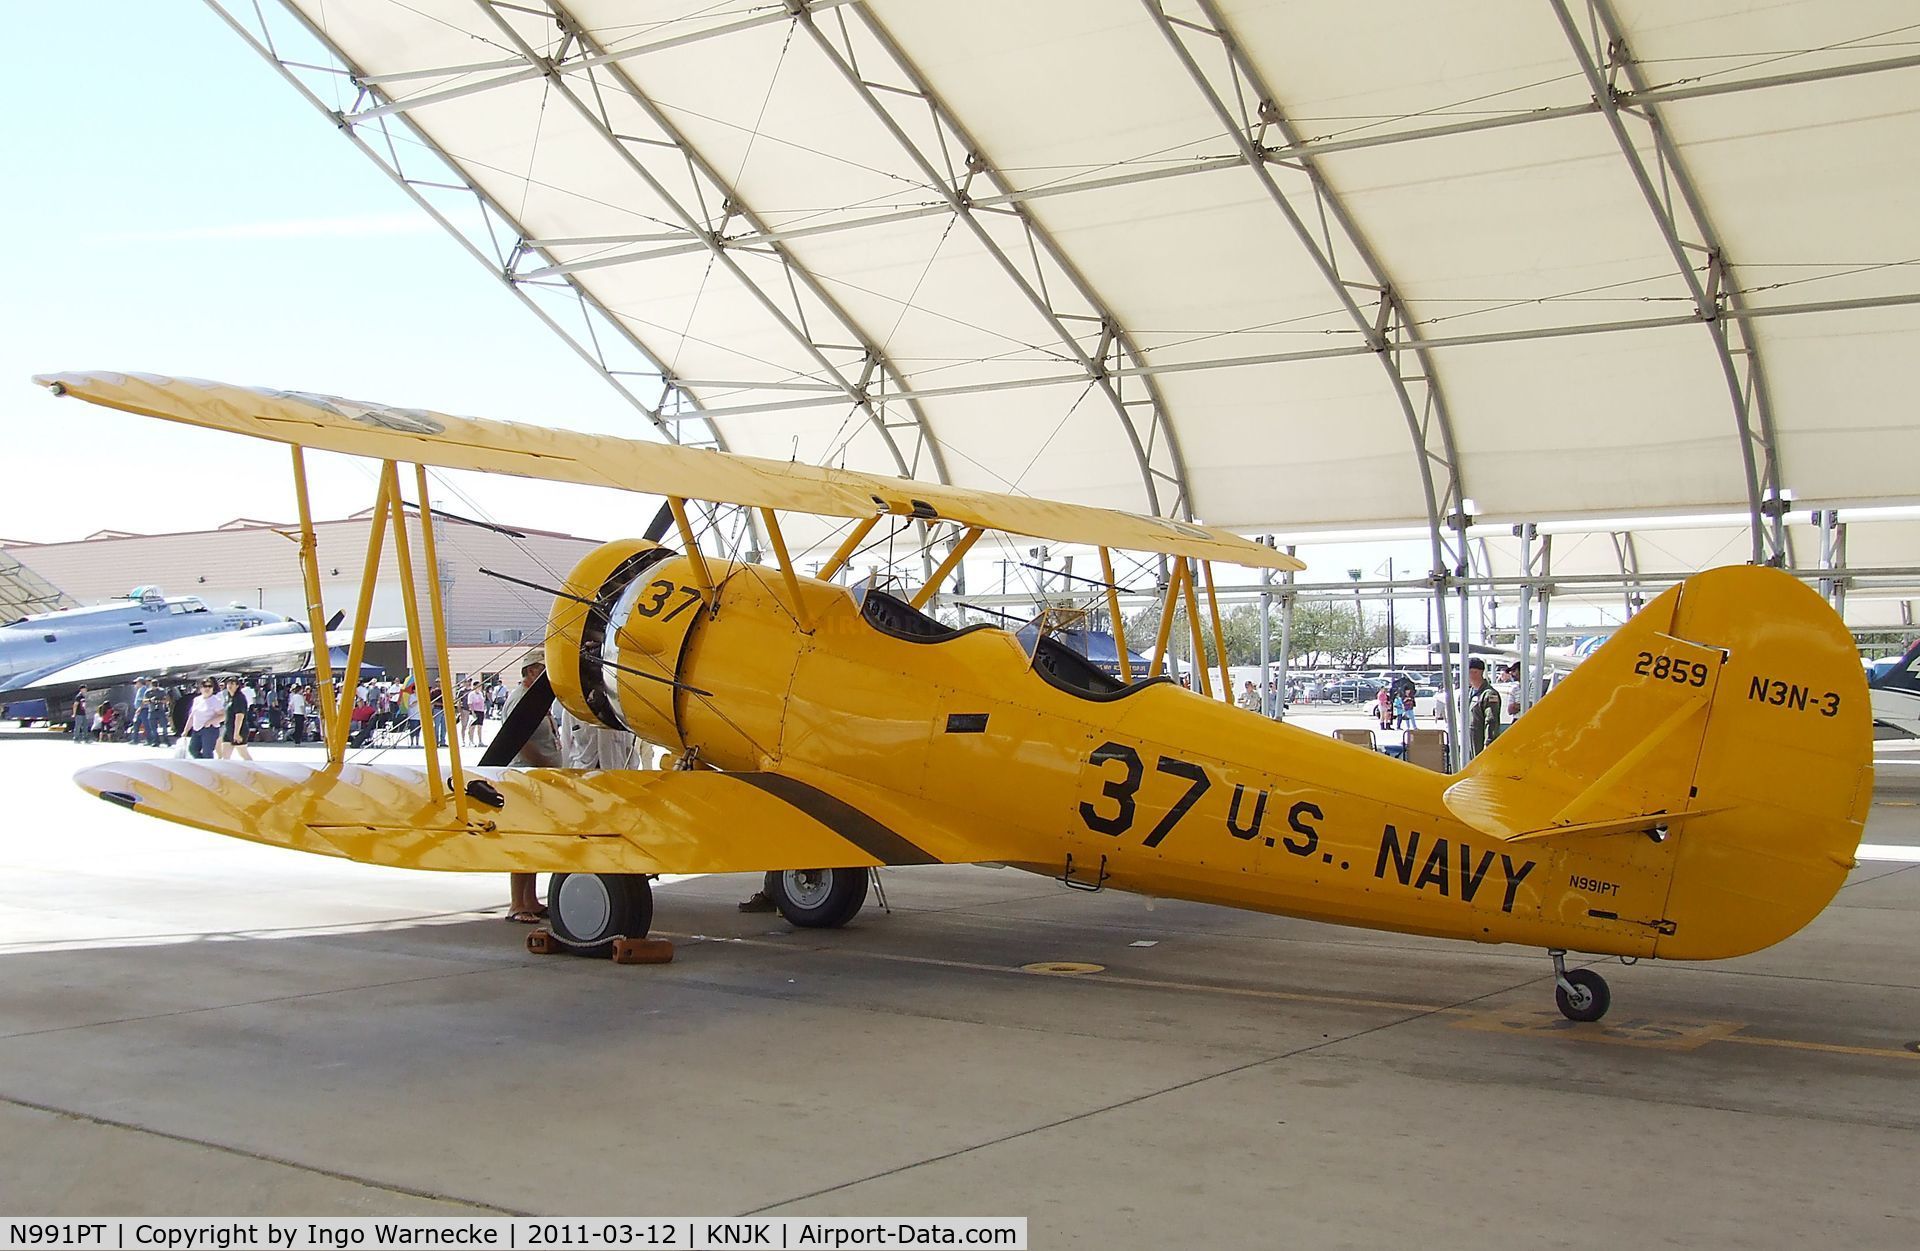 N991PT, 1938 Naval Aircraft Factory N3N-3 C/N 2859, Naval Aircraft Factory N3N-3 at the 2011 airshow at El Centro NAS, CA